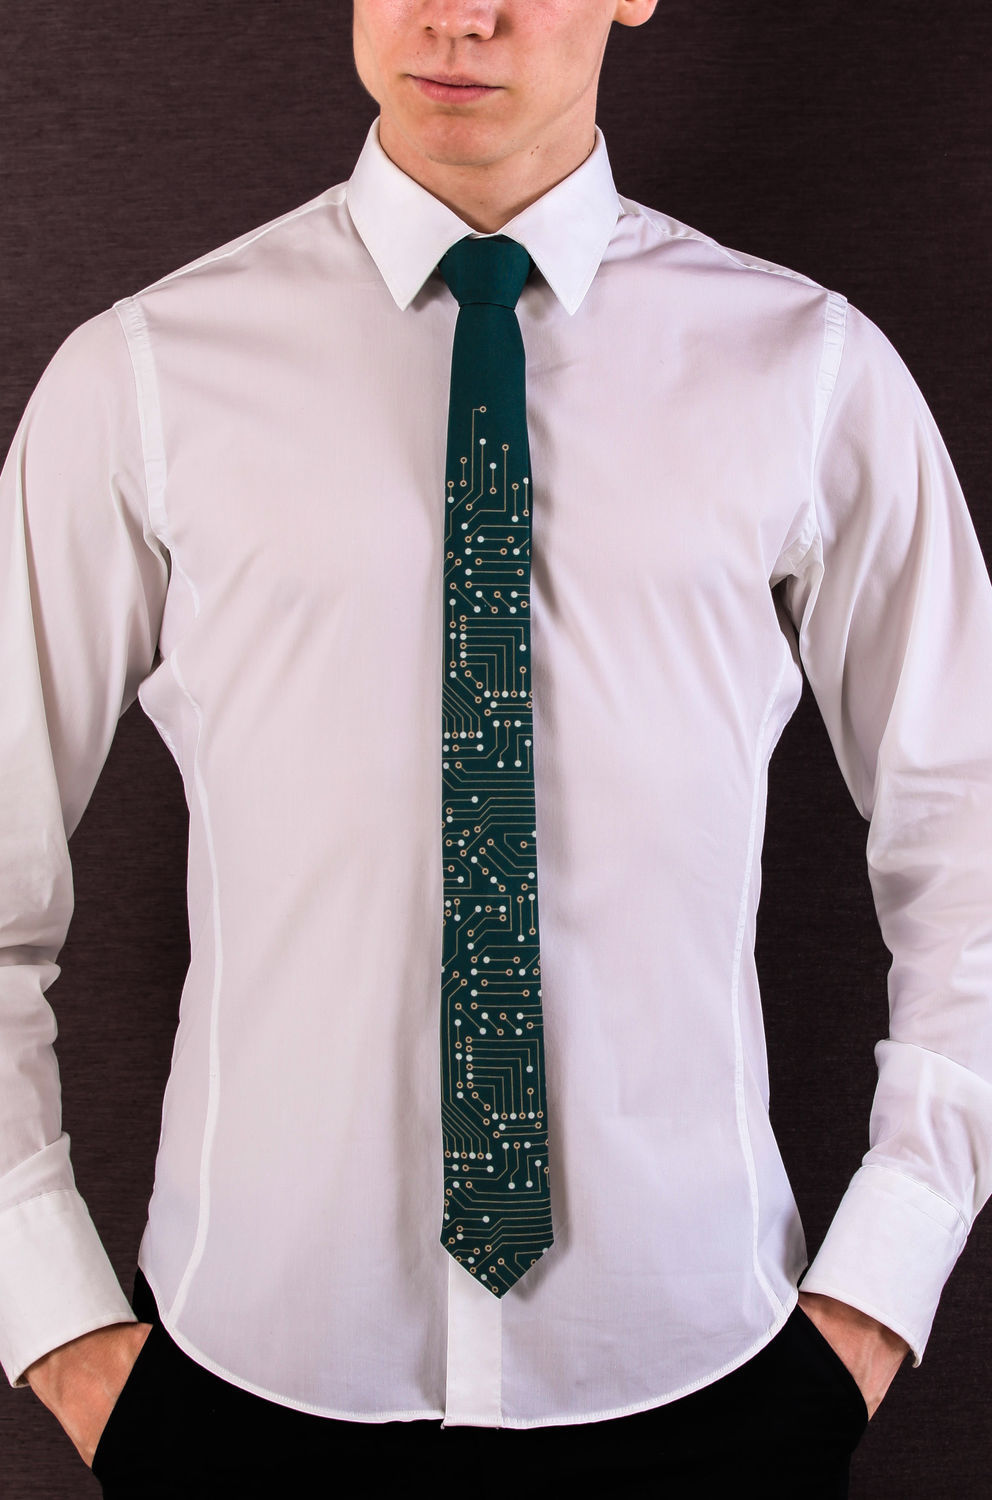 Виды рубашек и галстуков